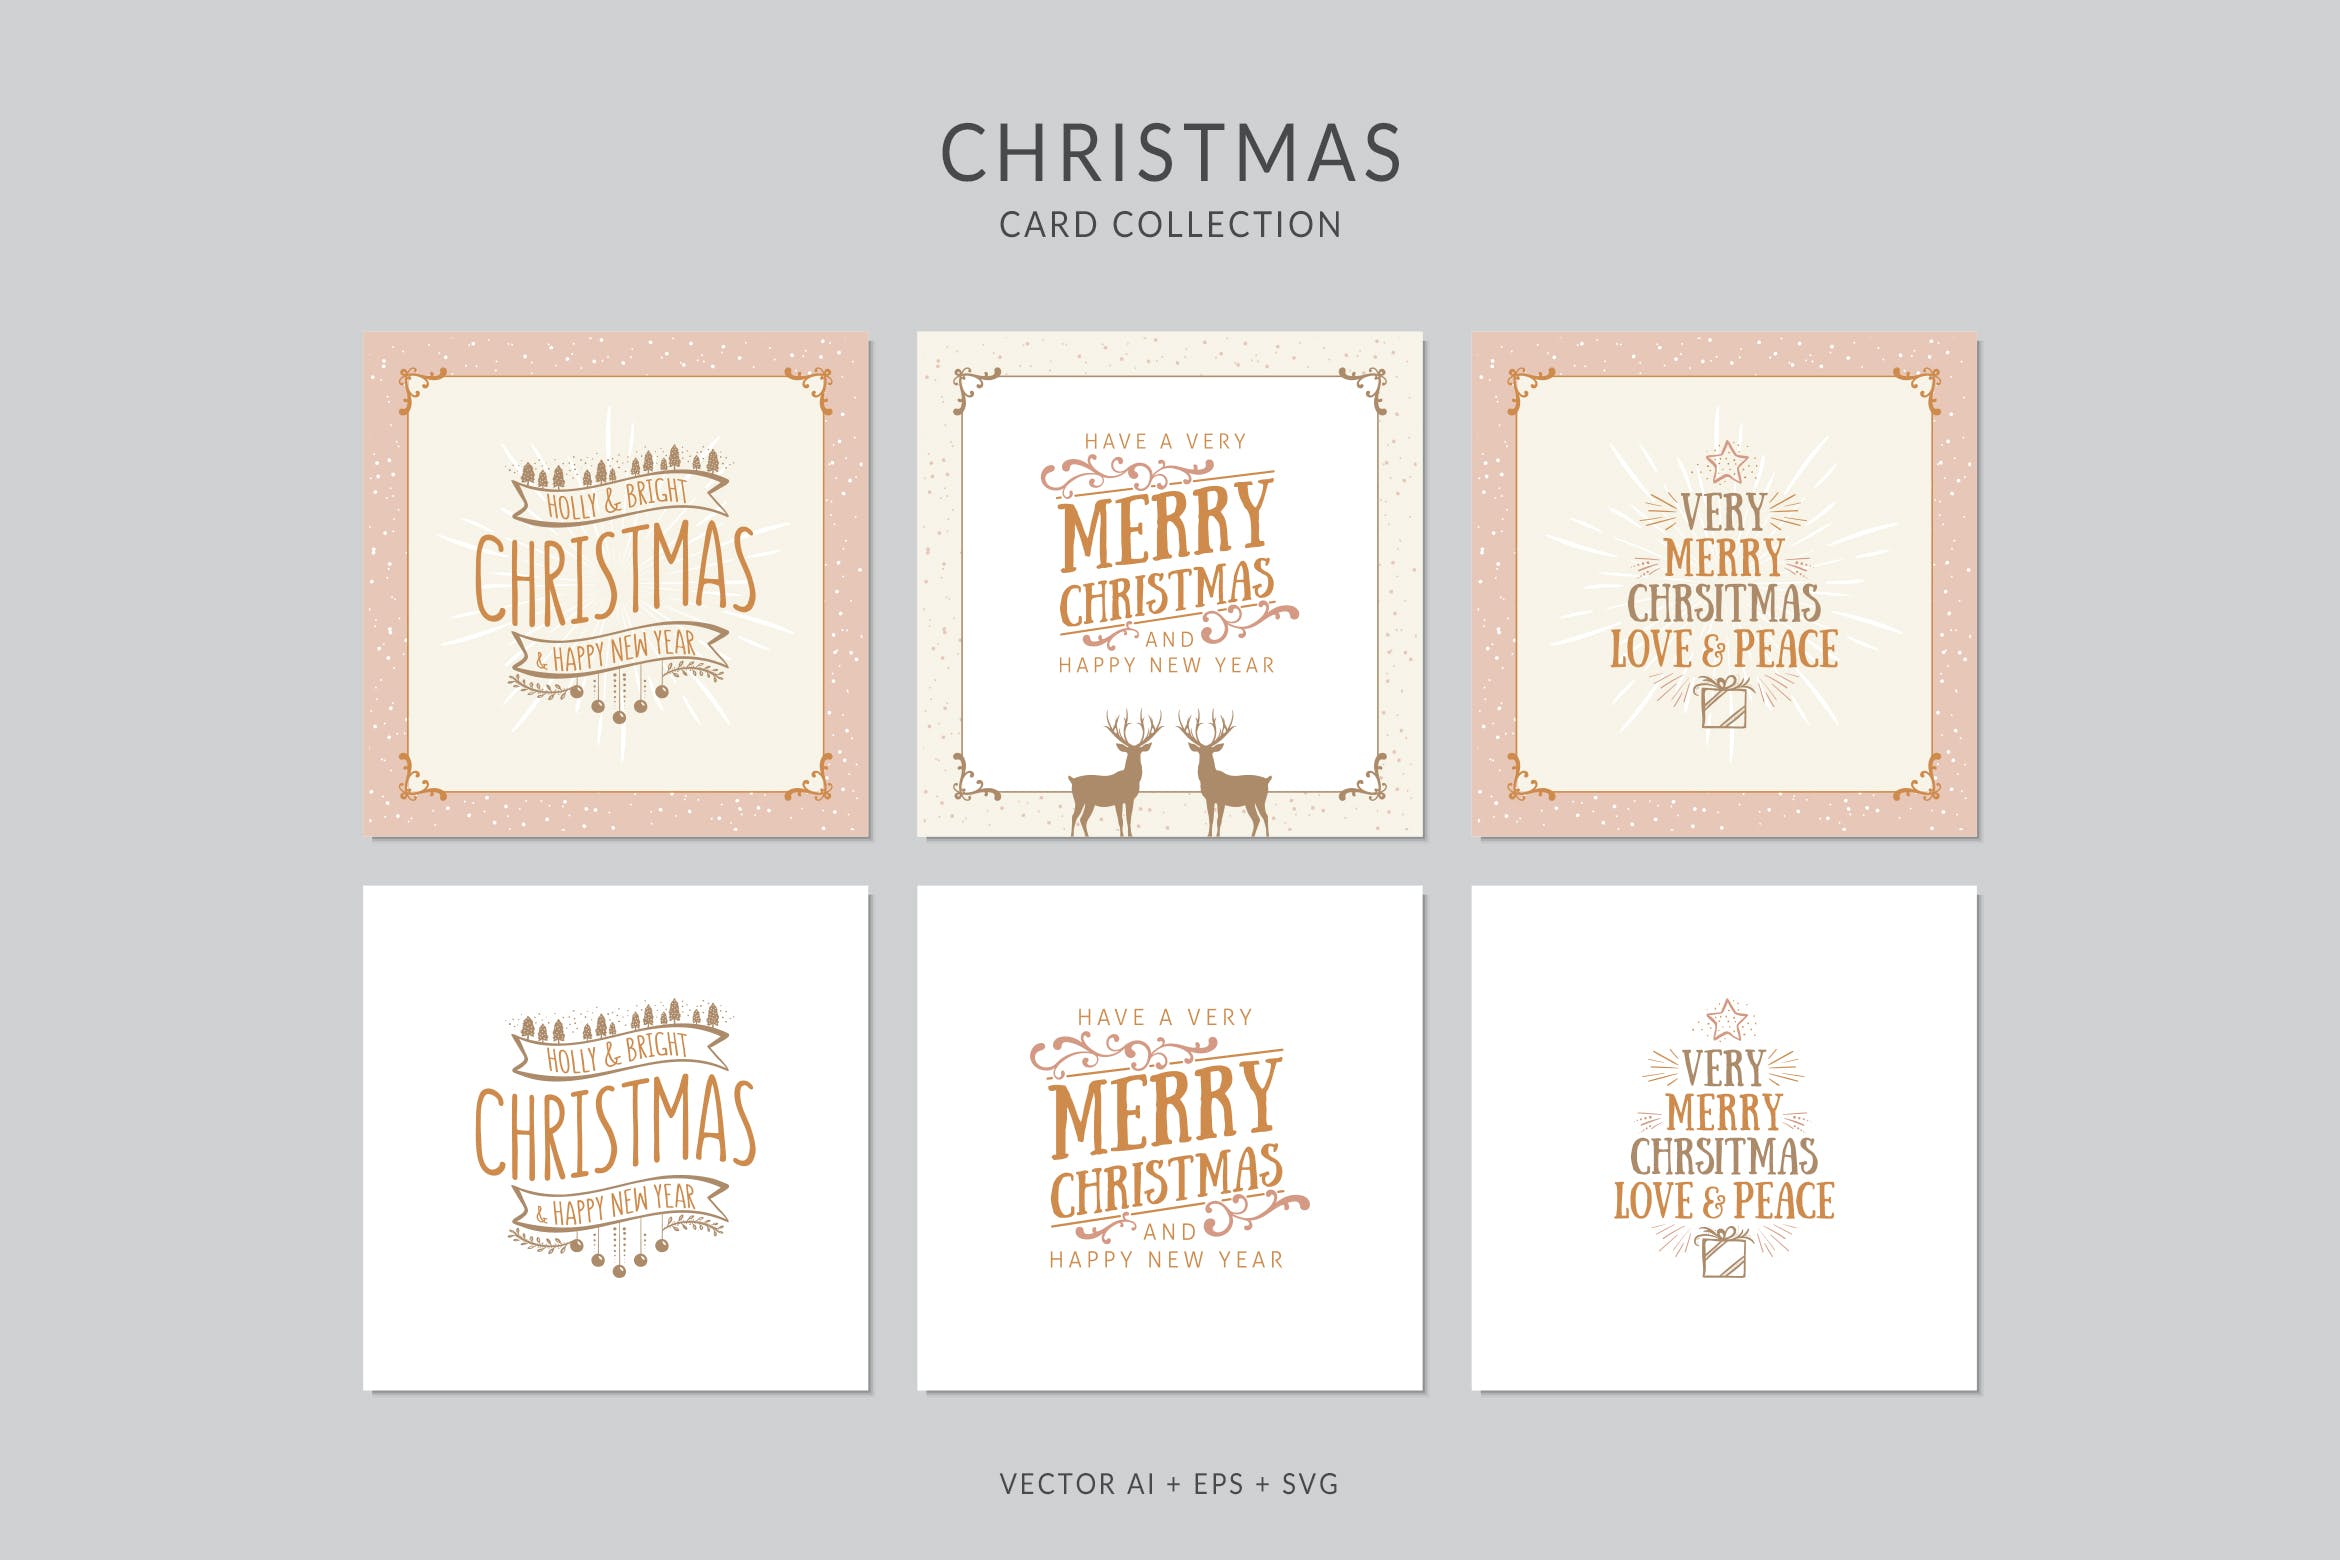 复古设计风格圣诞节贺卡矢量设计模板集 Christmas Greeting Card Vector Set插图